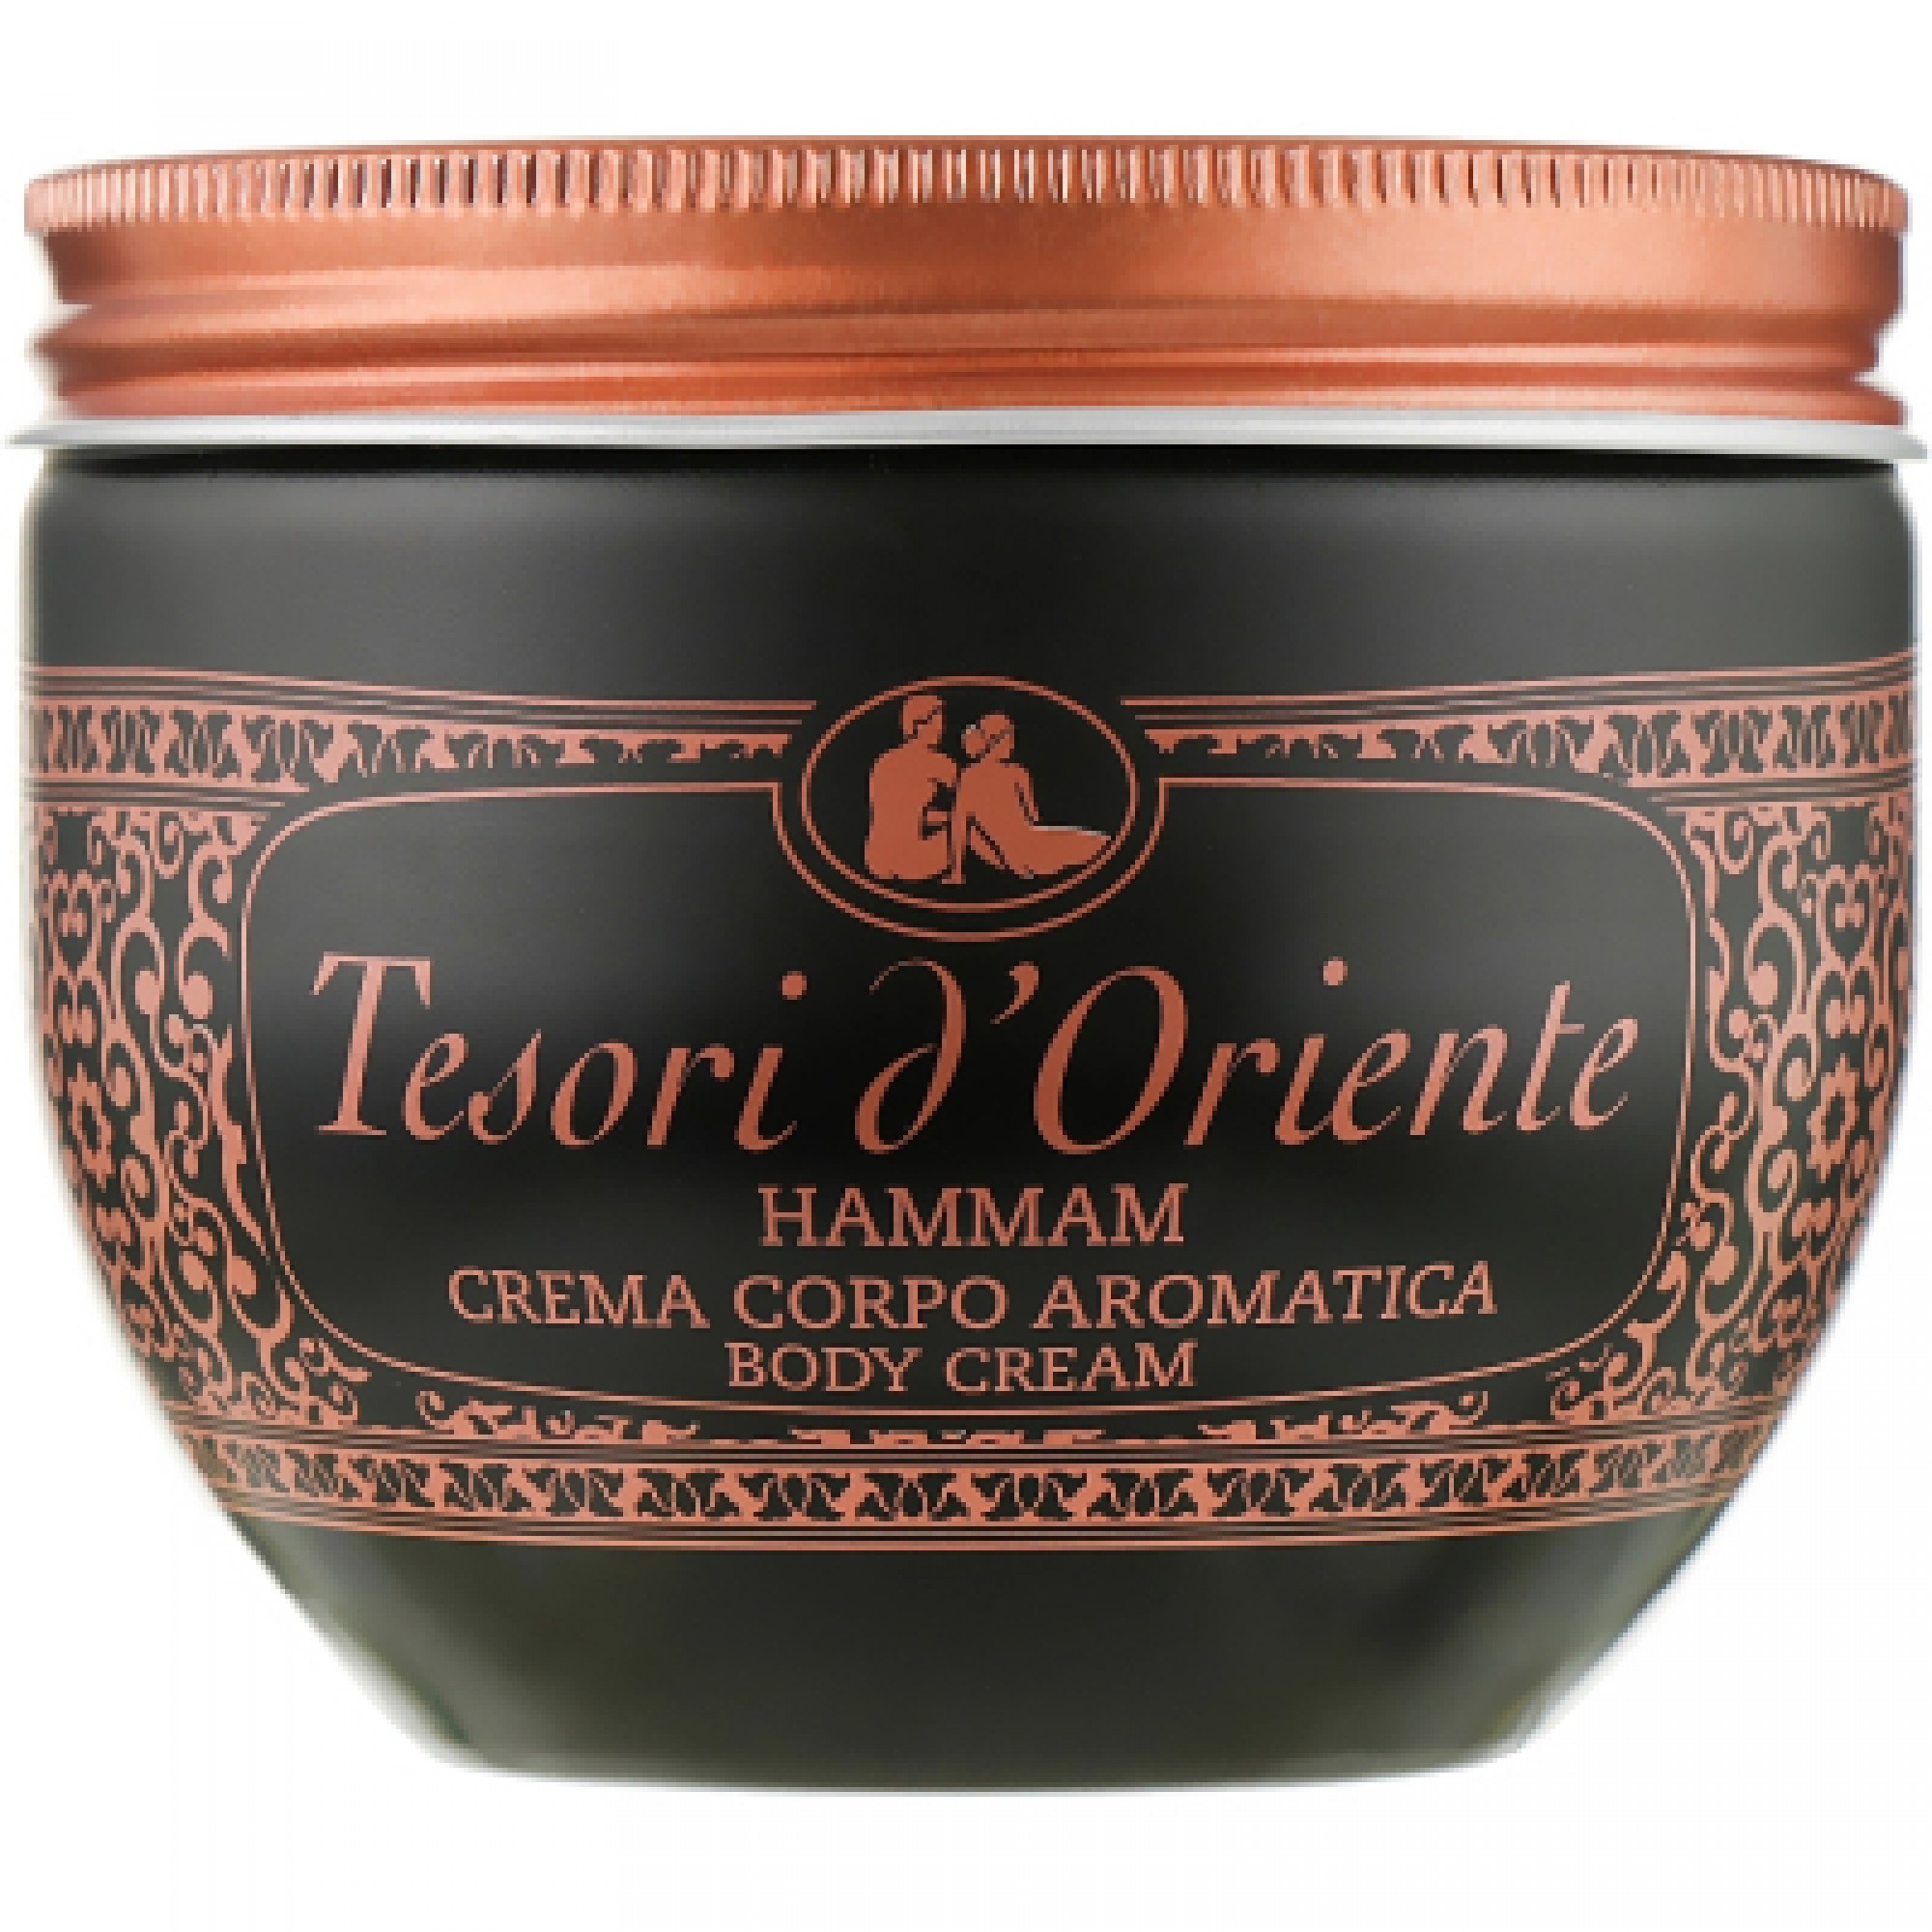 Крем для тіла Tesori d'Oriente парфумований Хамам олія аргани та апельсиновий цвіт 300 мл (8008970005607)